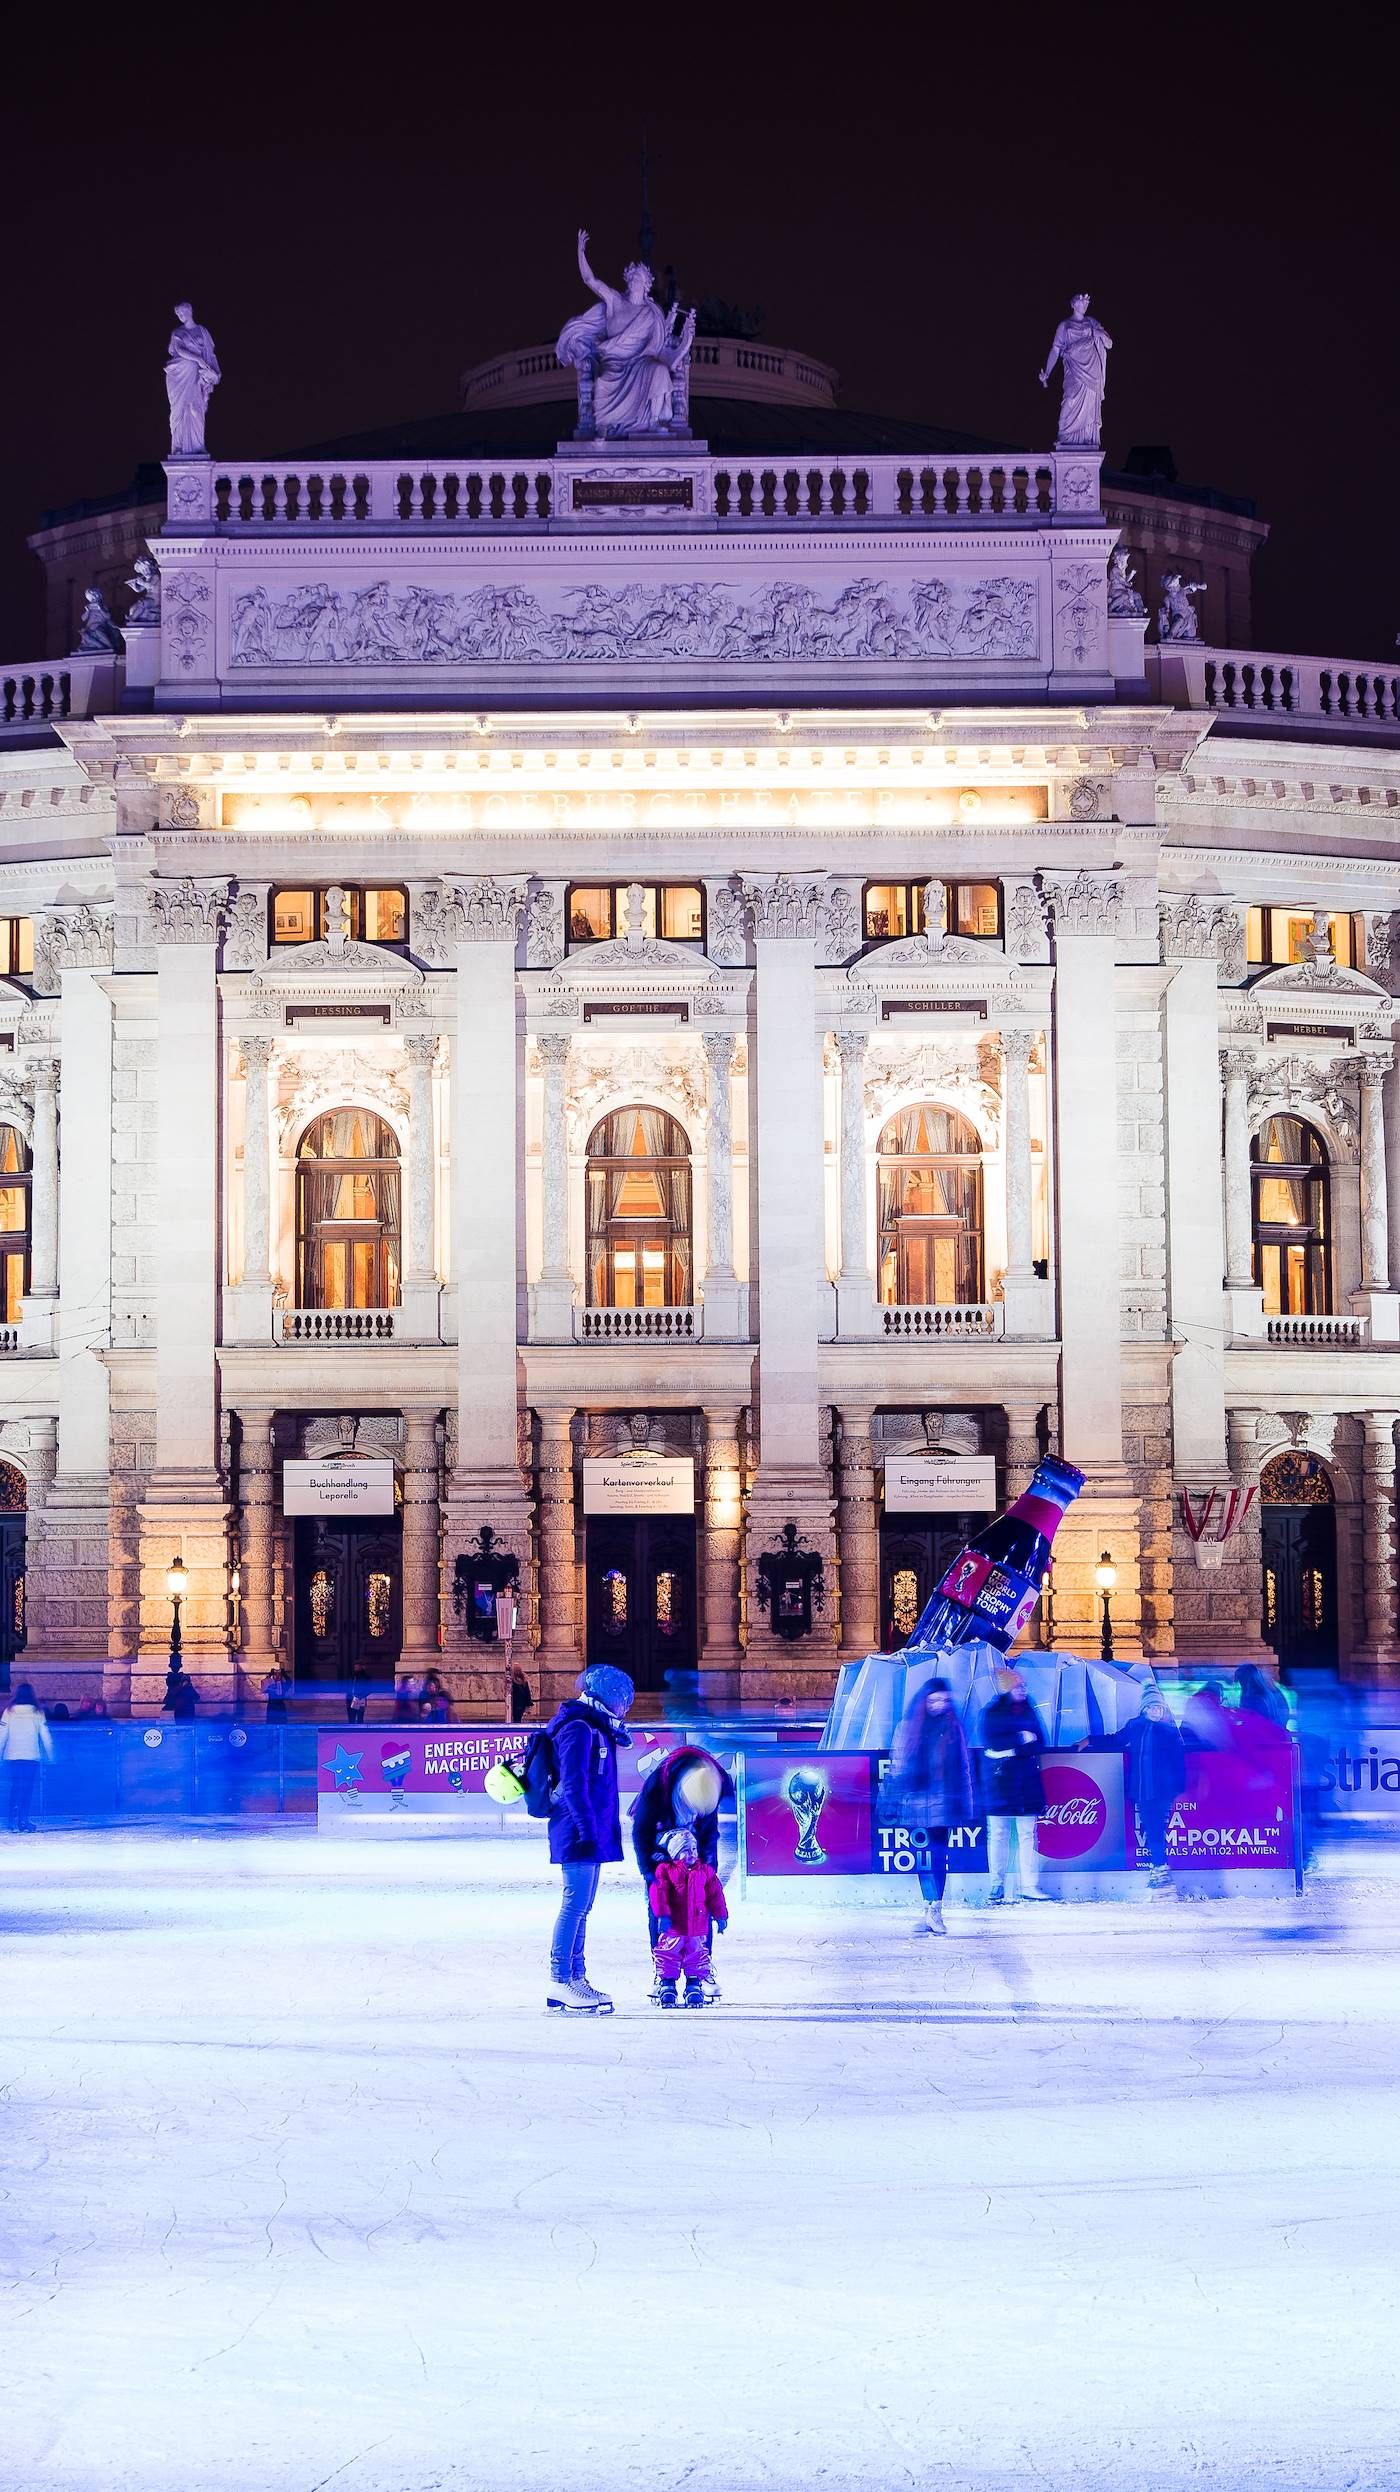 Le Burgtheater, théâtre inauguré en 1888 - Vienne - Autriche